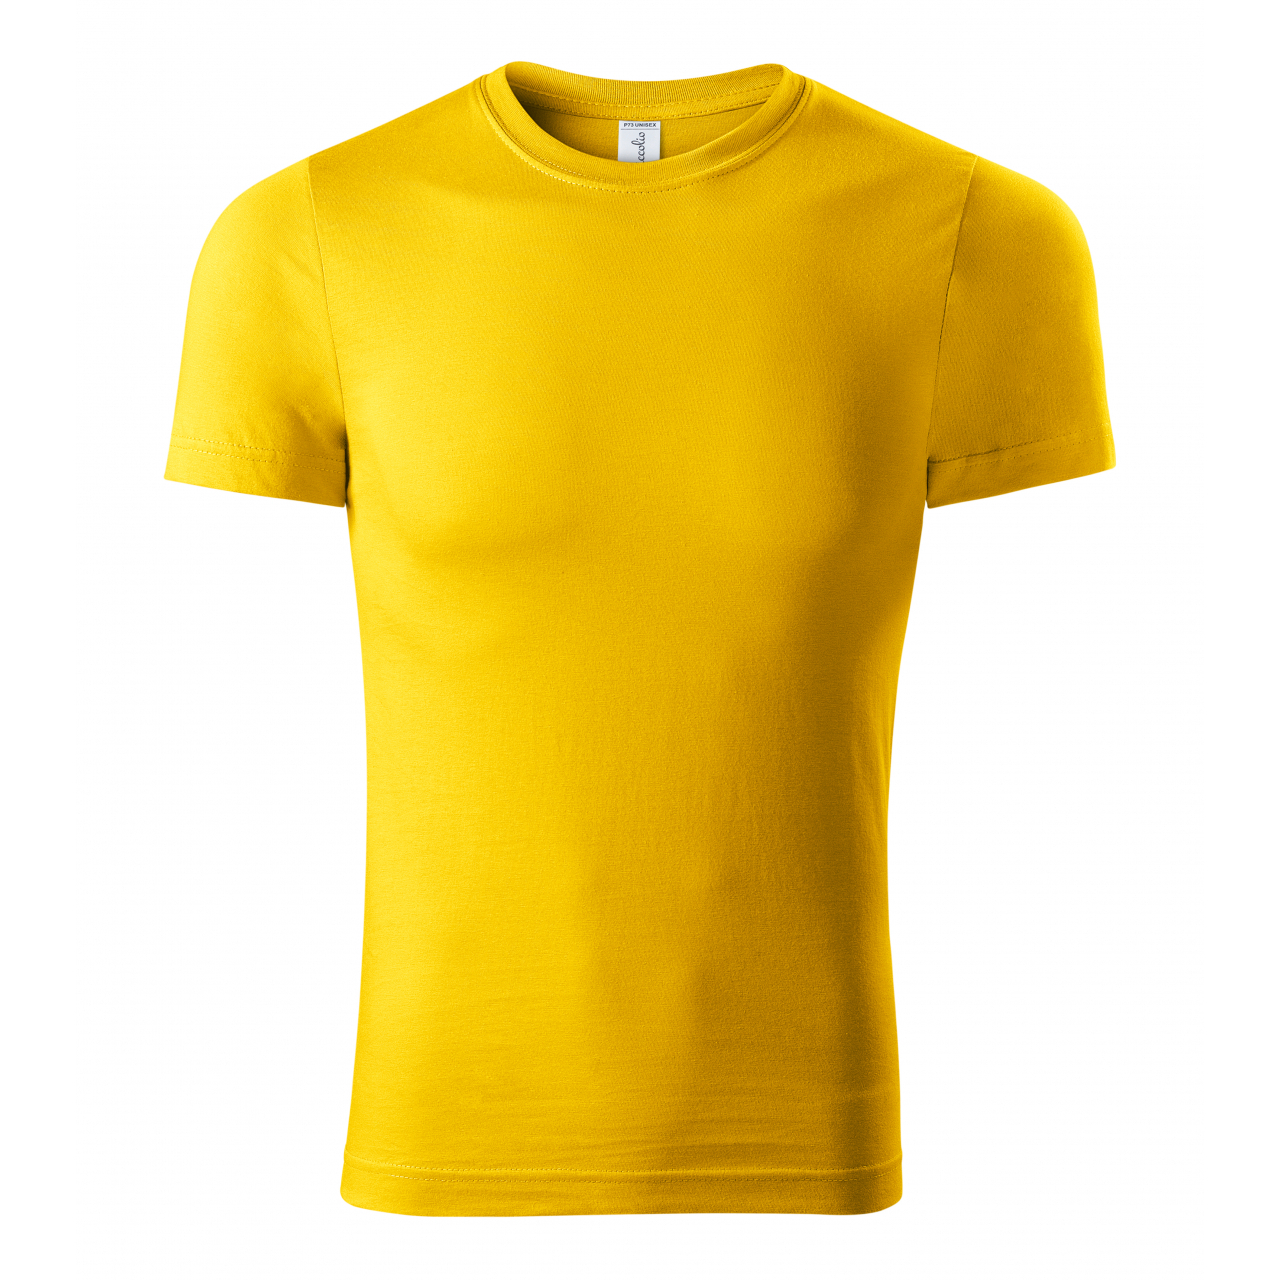 Tričko unisex Piccolio Paint - žluté, XL